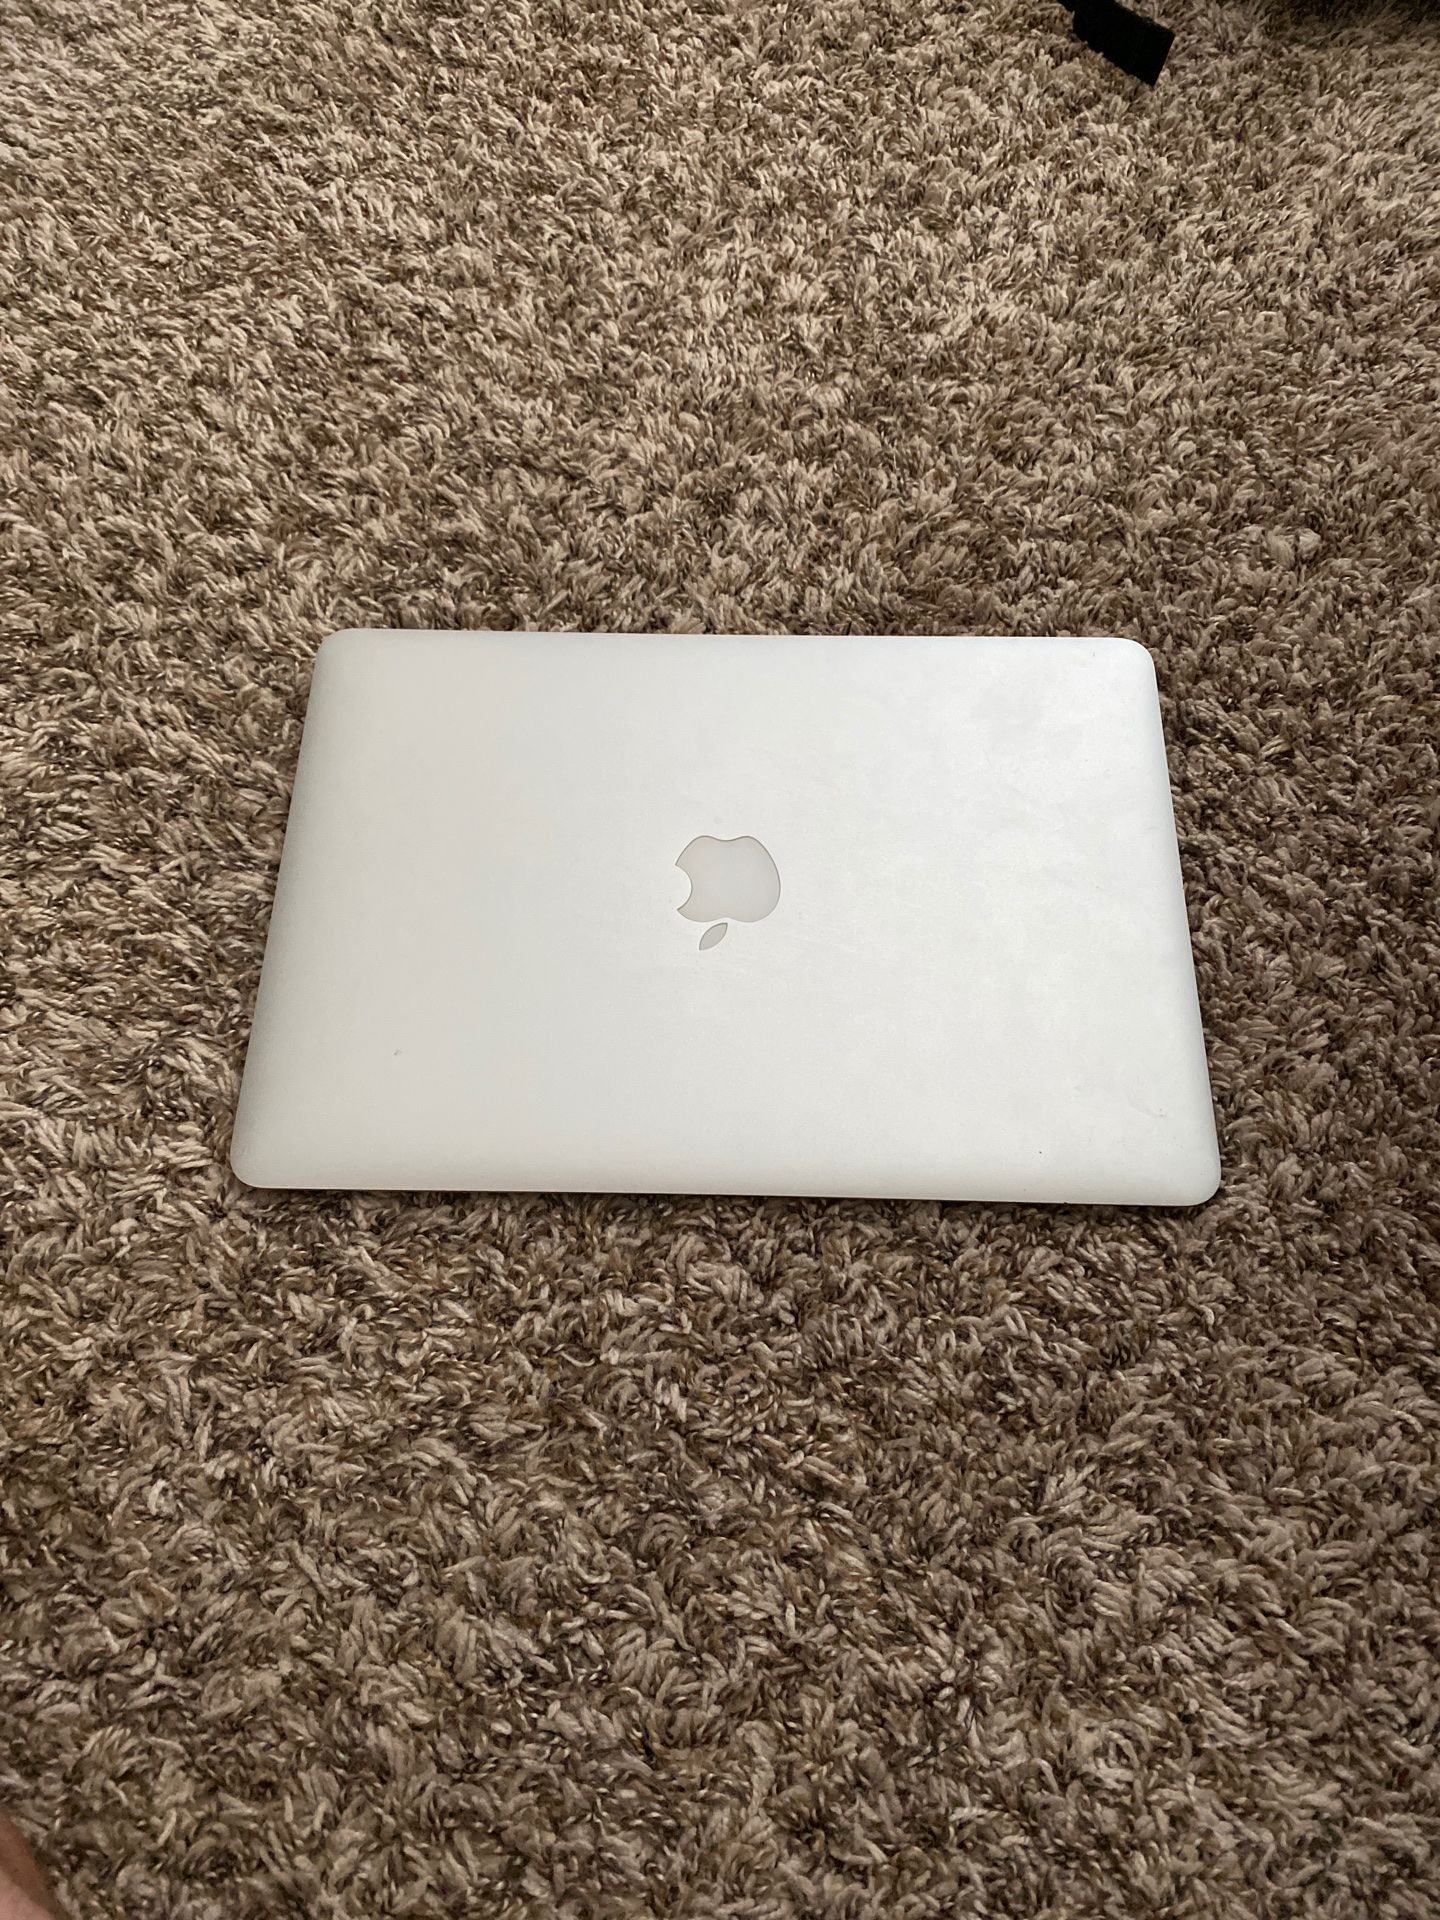 2011 MacBook Air 13.3 mid